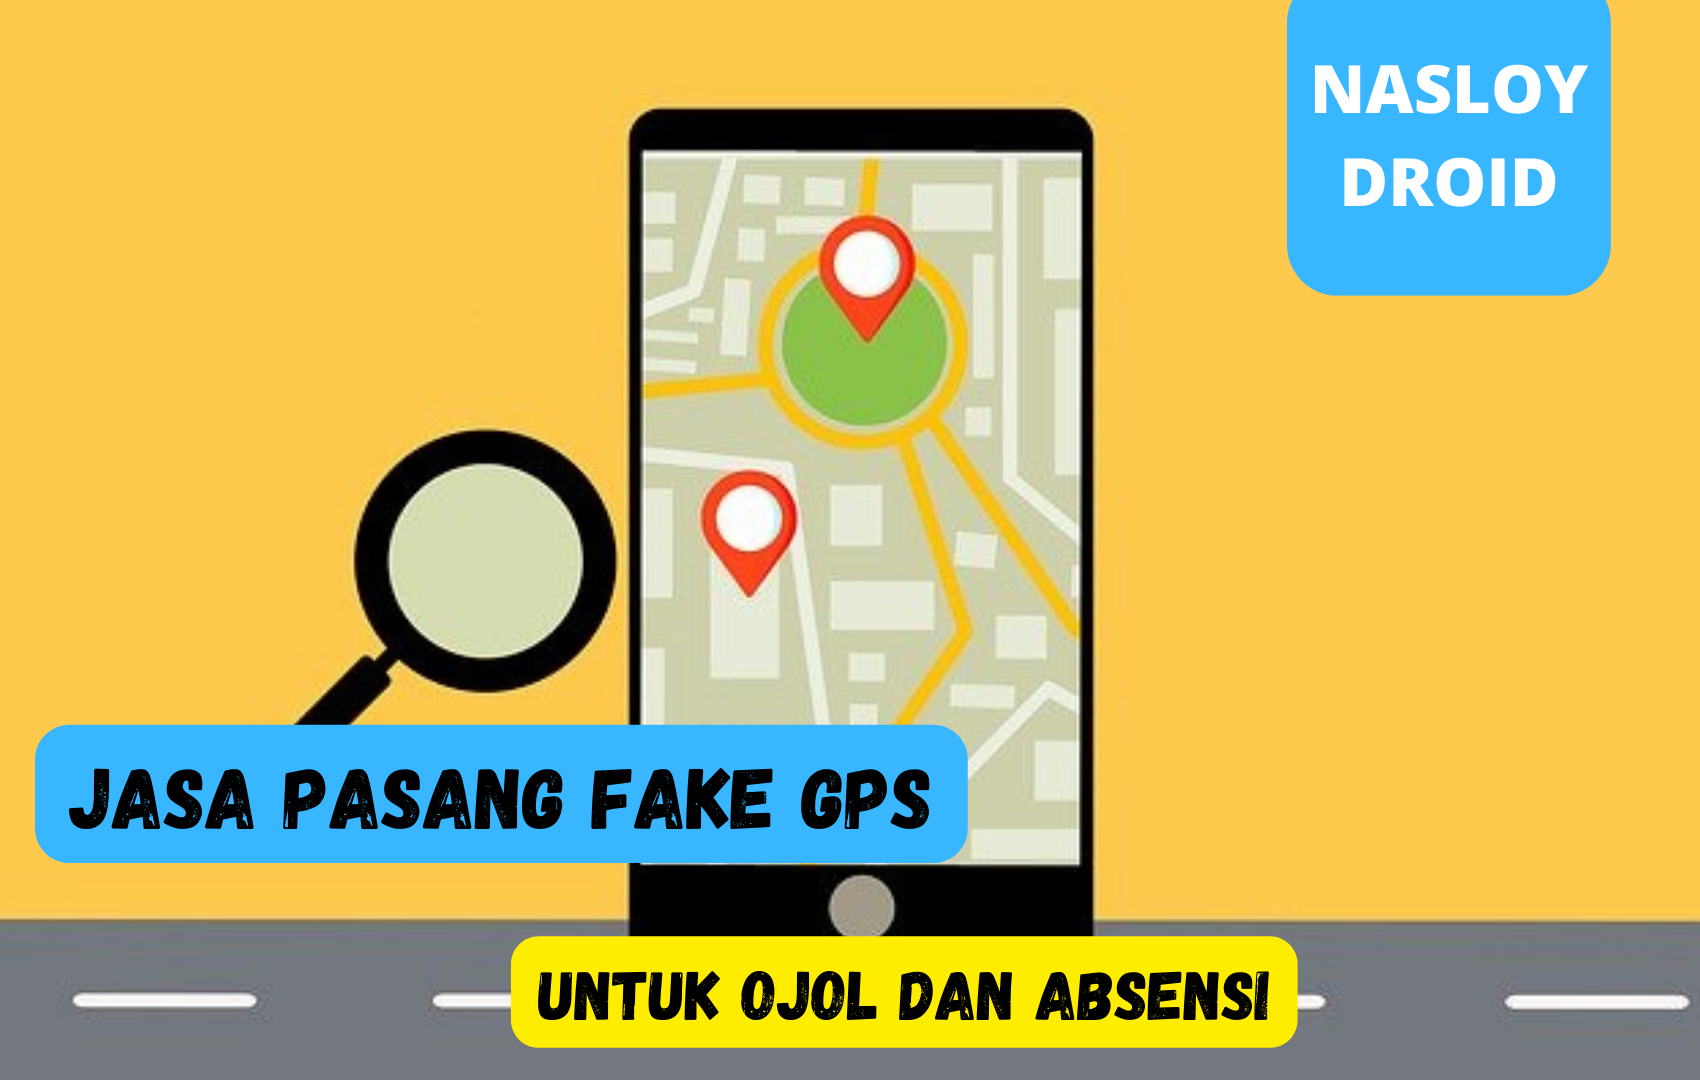 Jasa Pasang Fake GPS Untuk OJOL dan Absensi